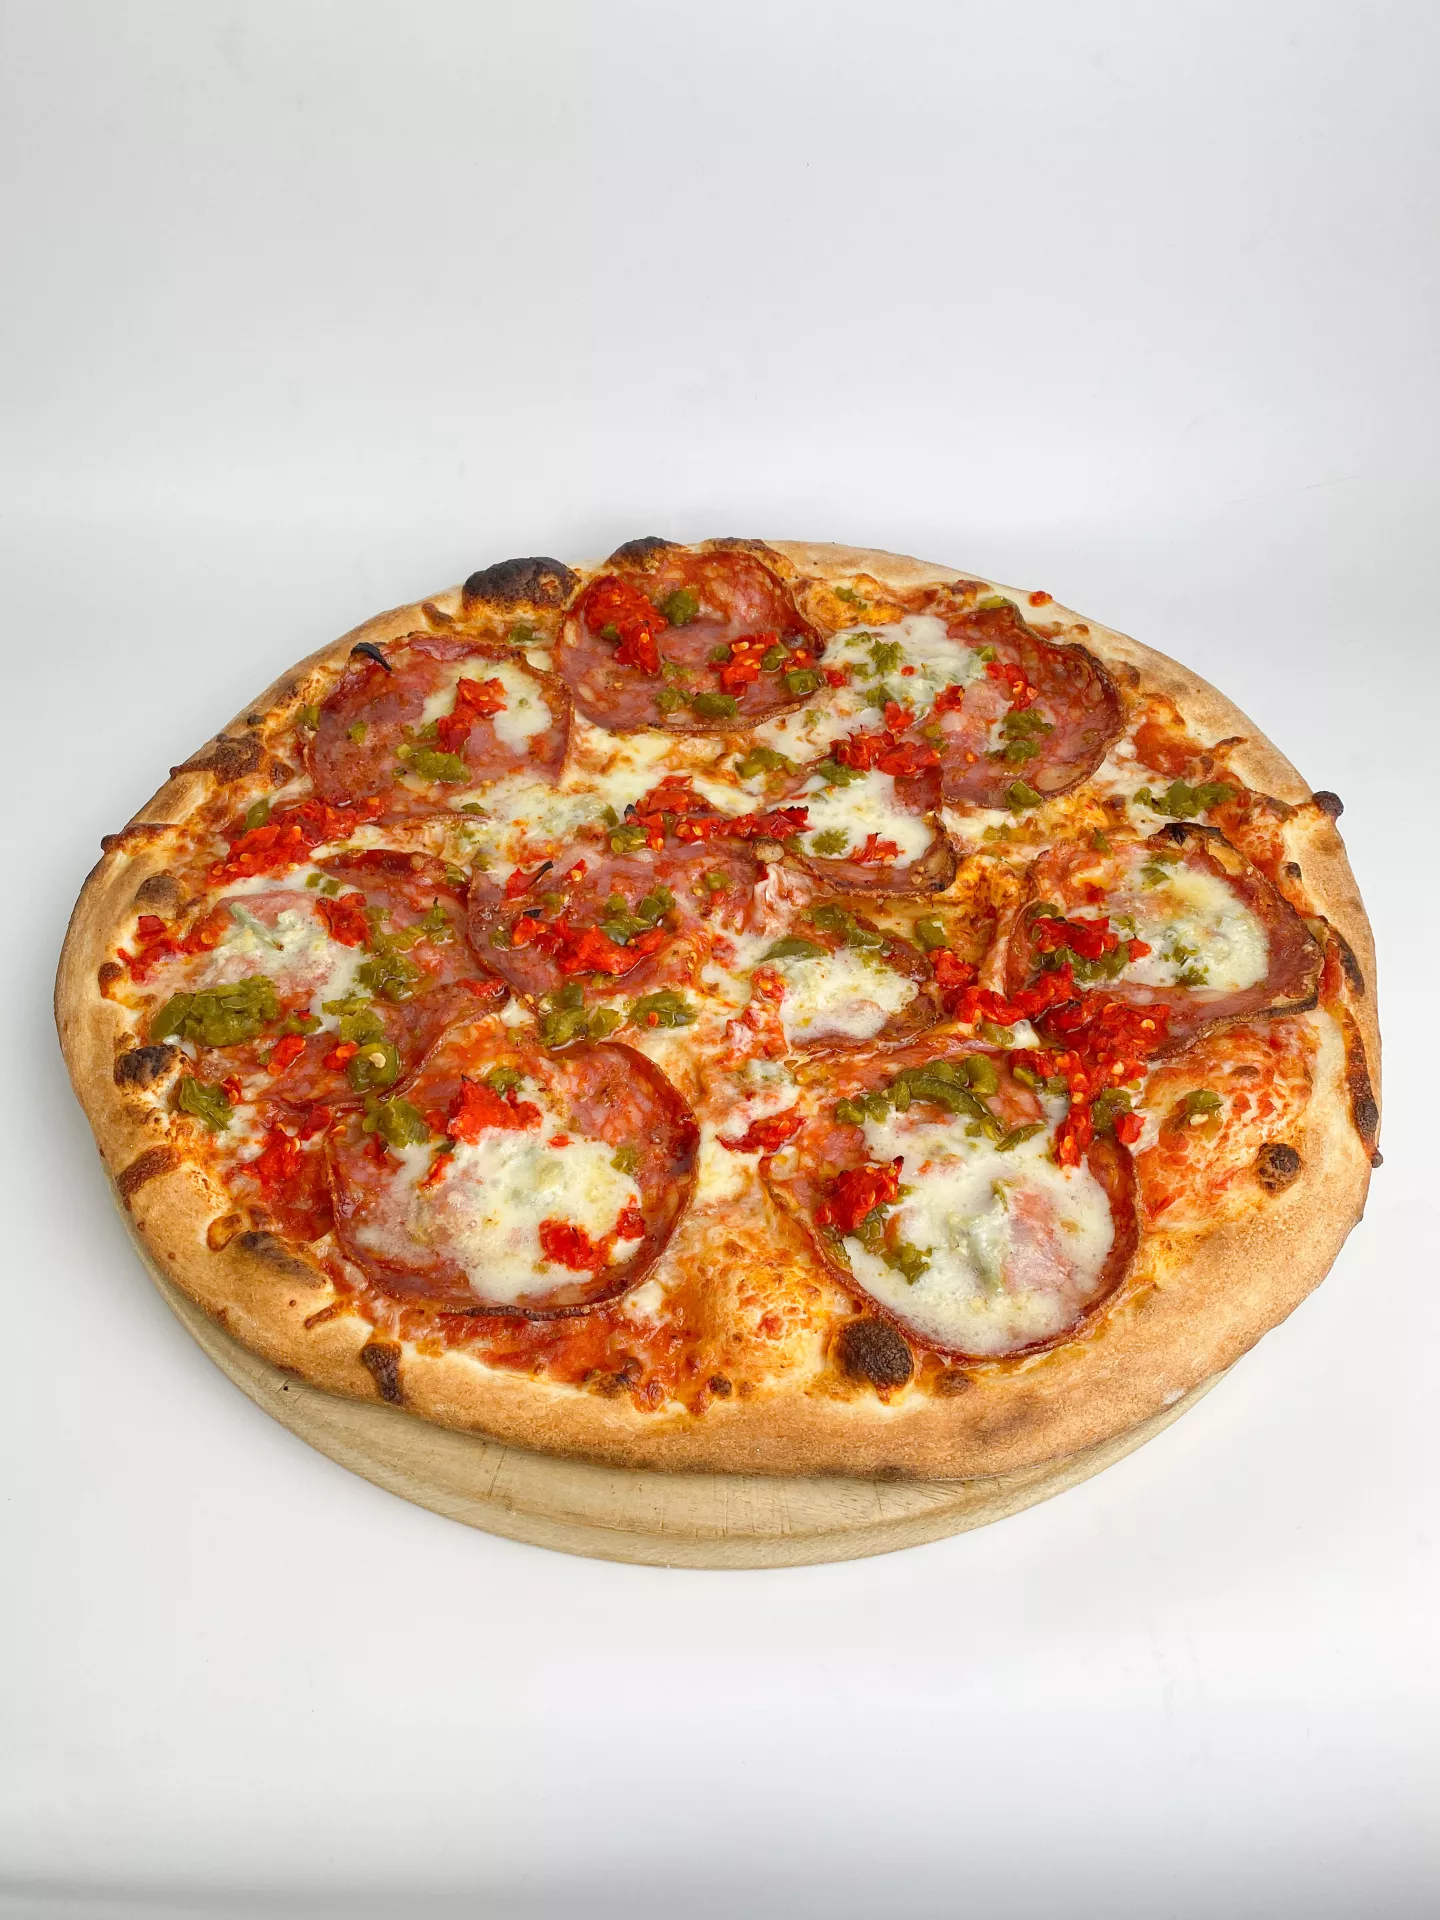 Pizza Gorgonzola picante (pozor pizza je ostrá)